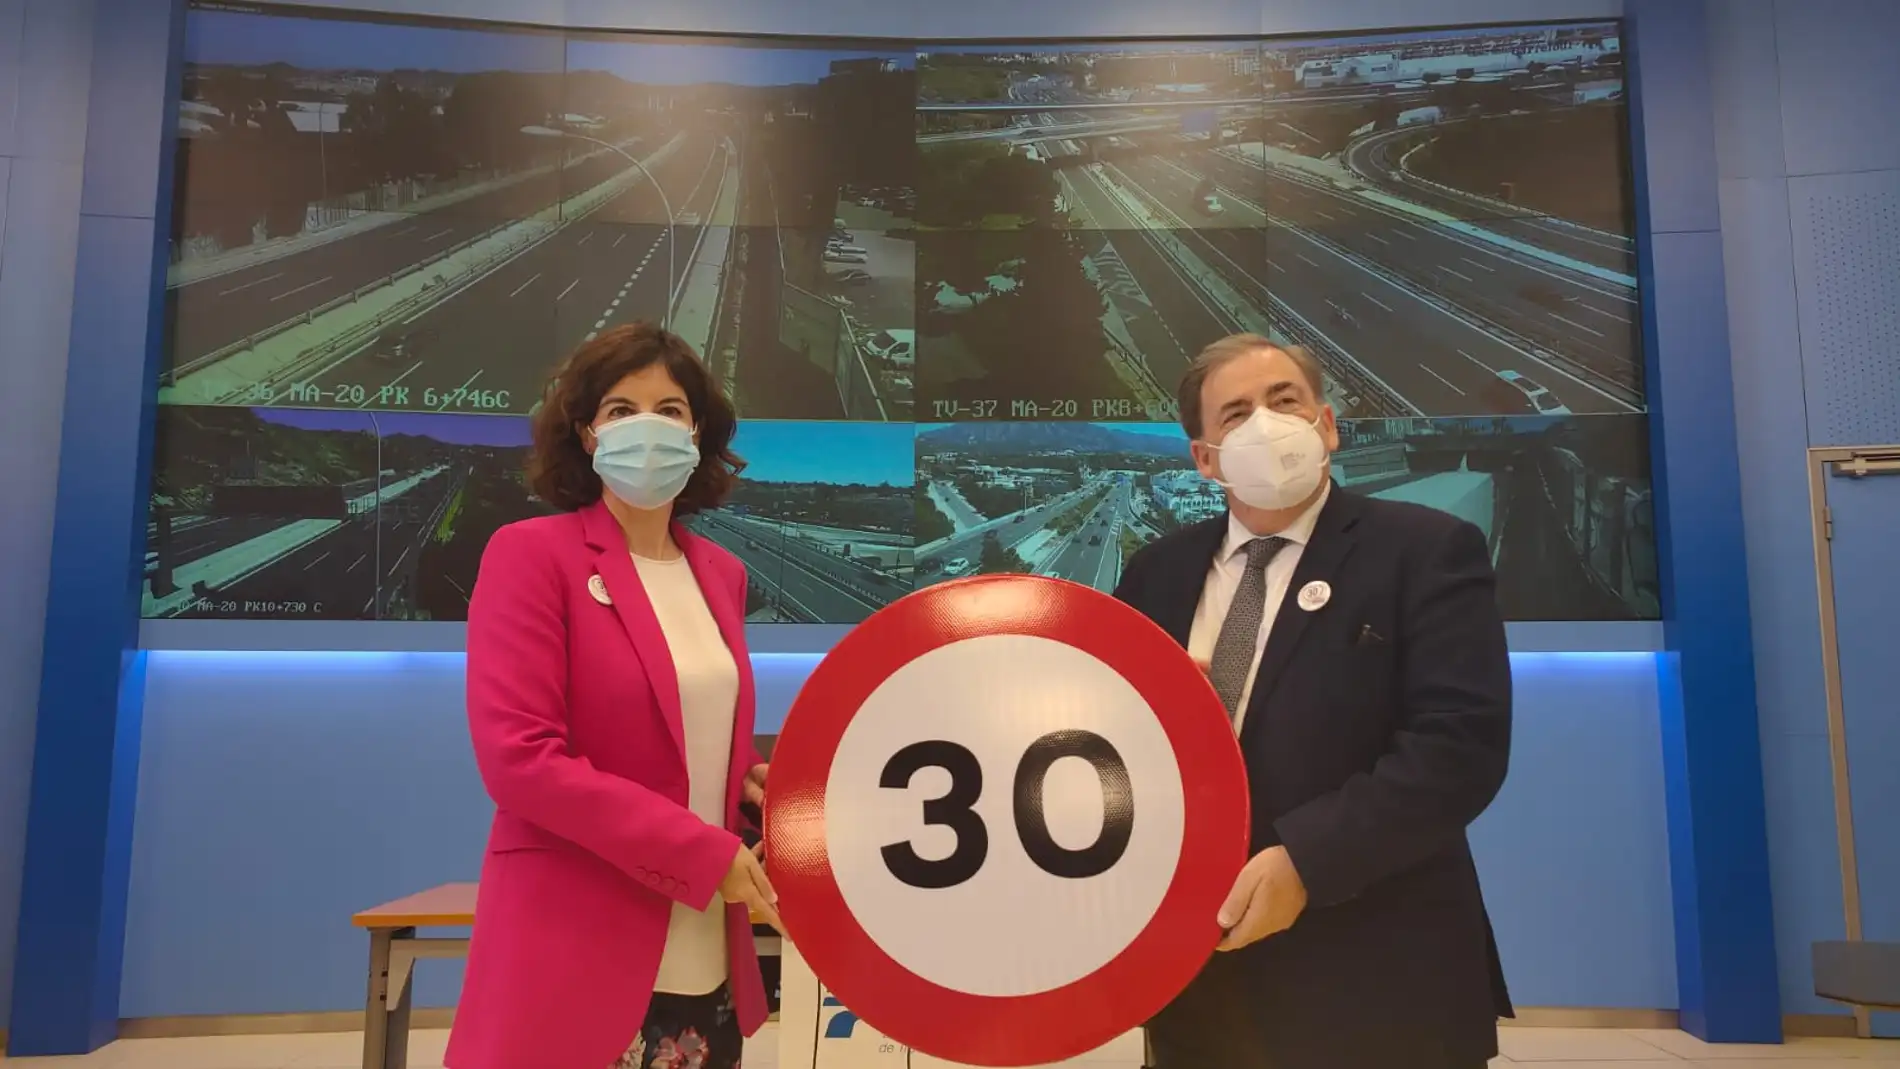 La reducción a 30 km/h tratará de evitar los 12 muertos en Málaga el año pasado